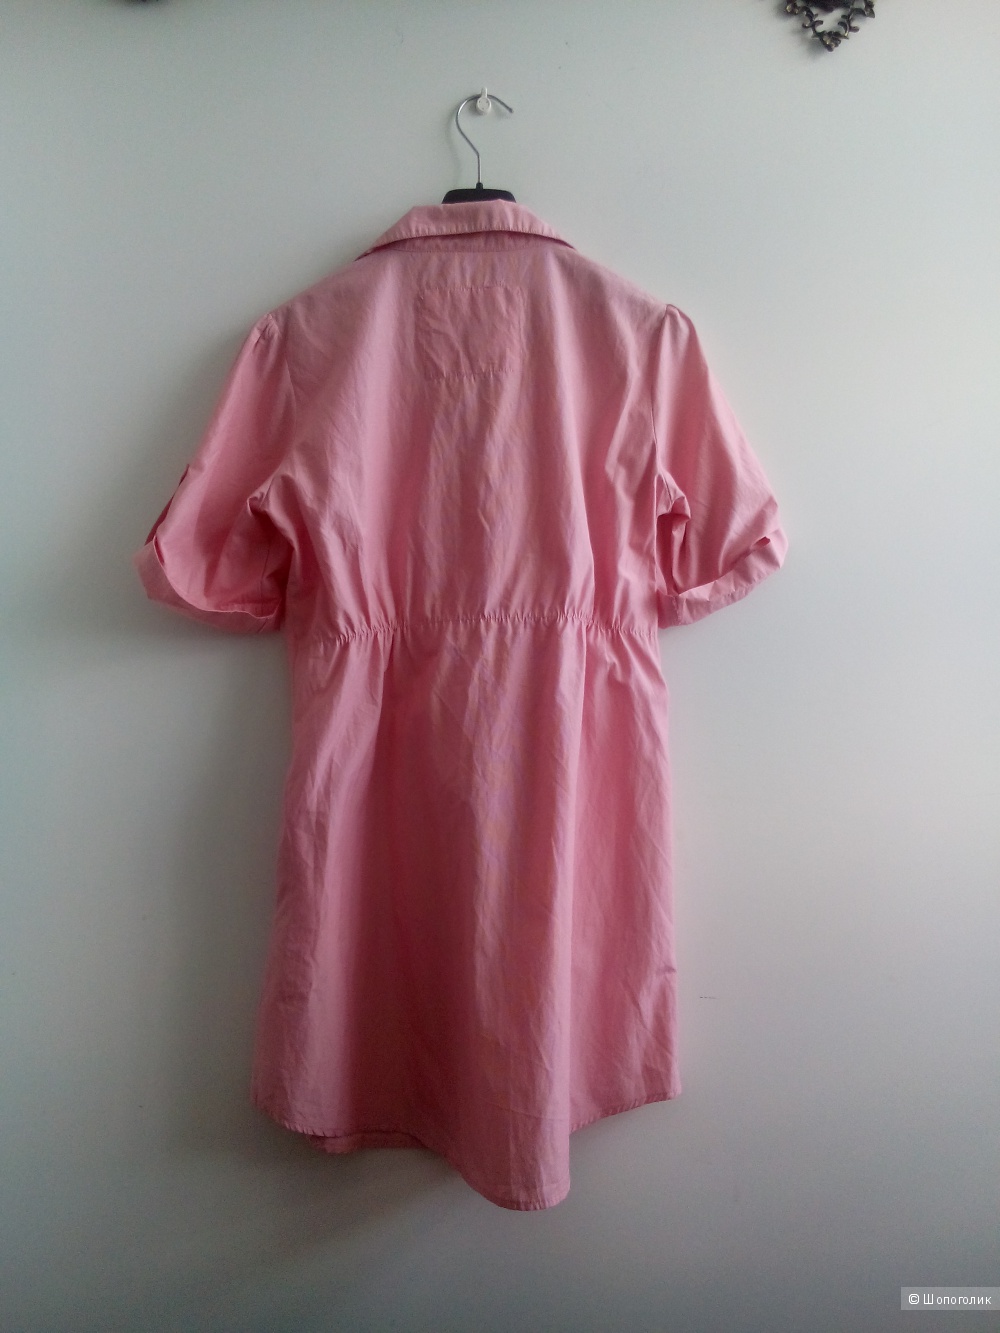 Платье розовое в мелкую продольную полосочкуTOMY HILFIGER в размере M 44-46